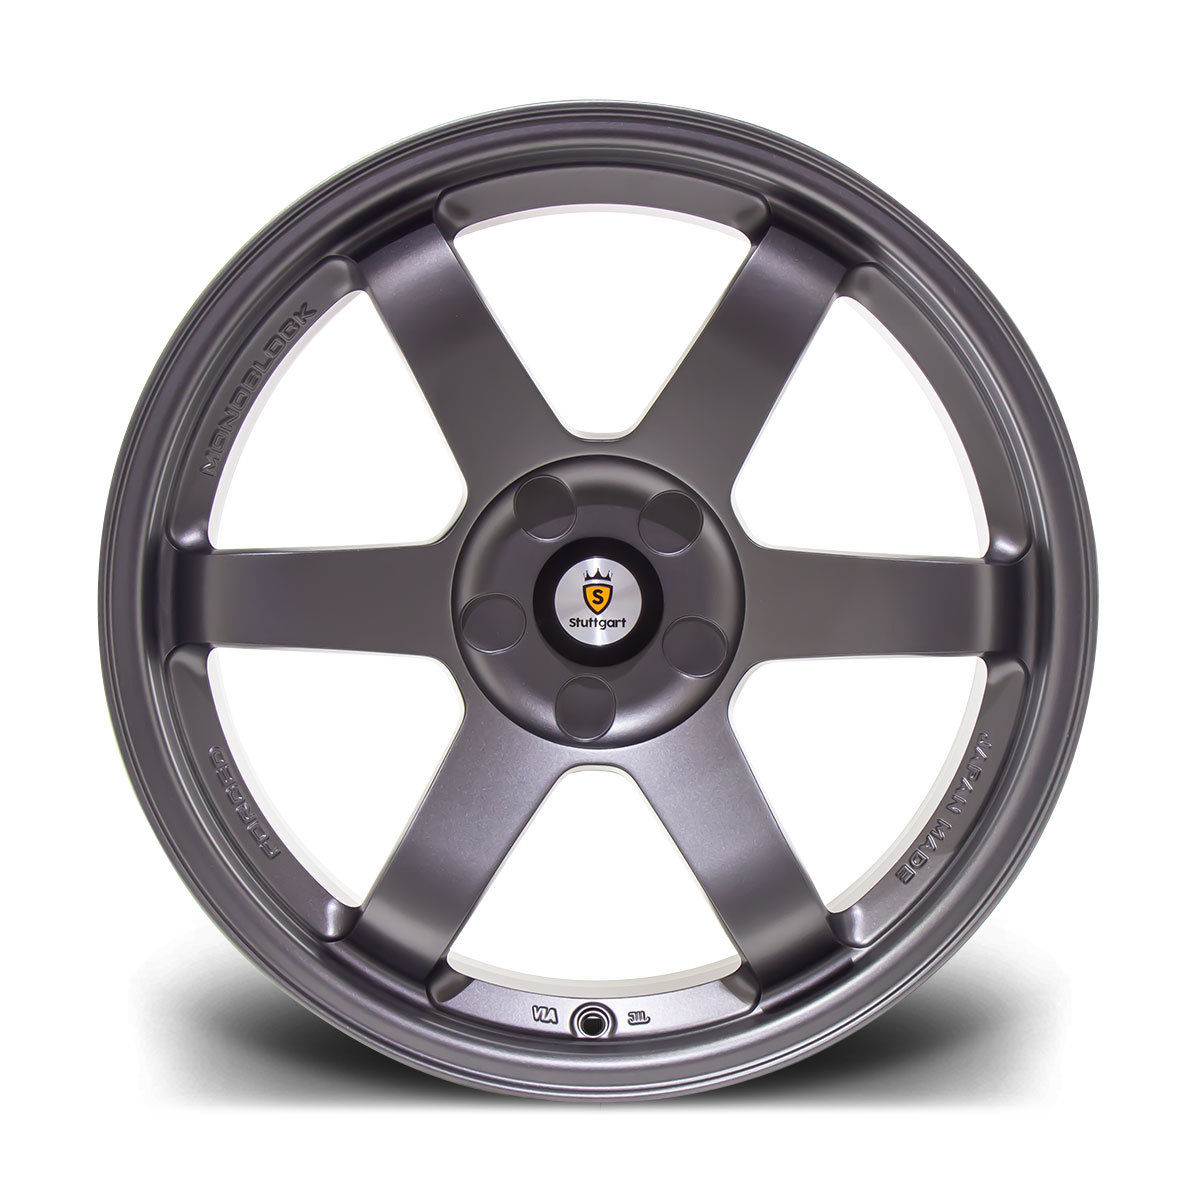 Stuttgart ST16-N light alloy wheels